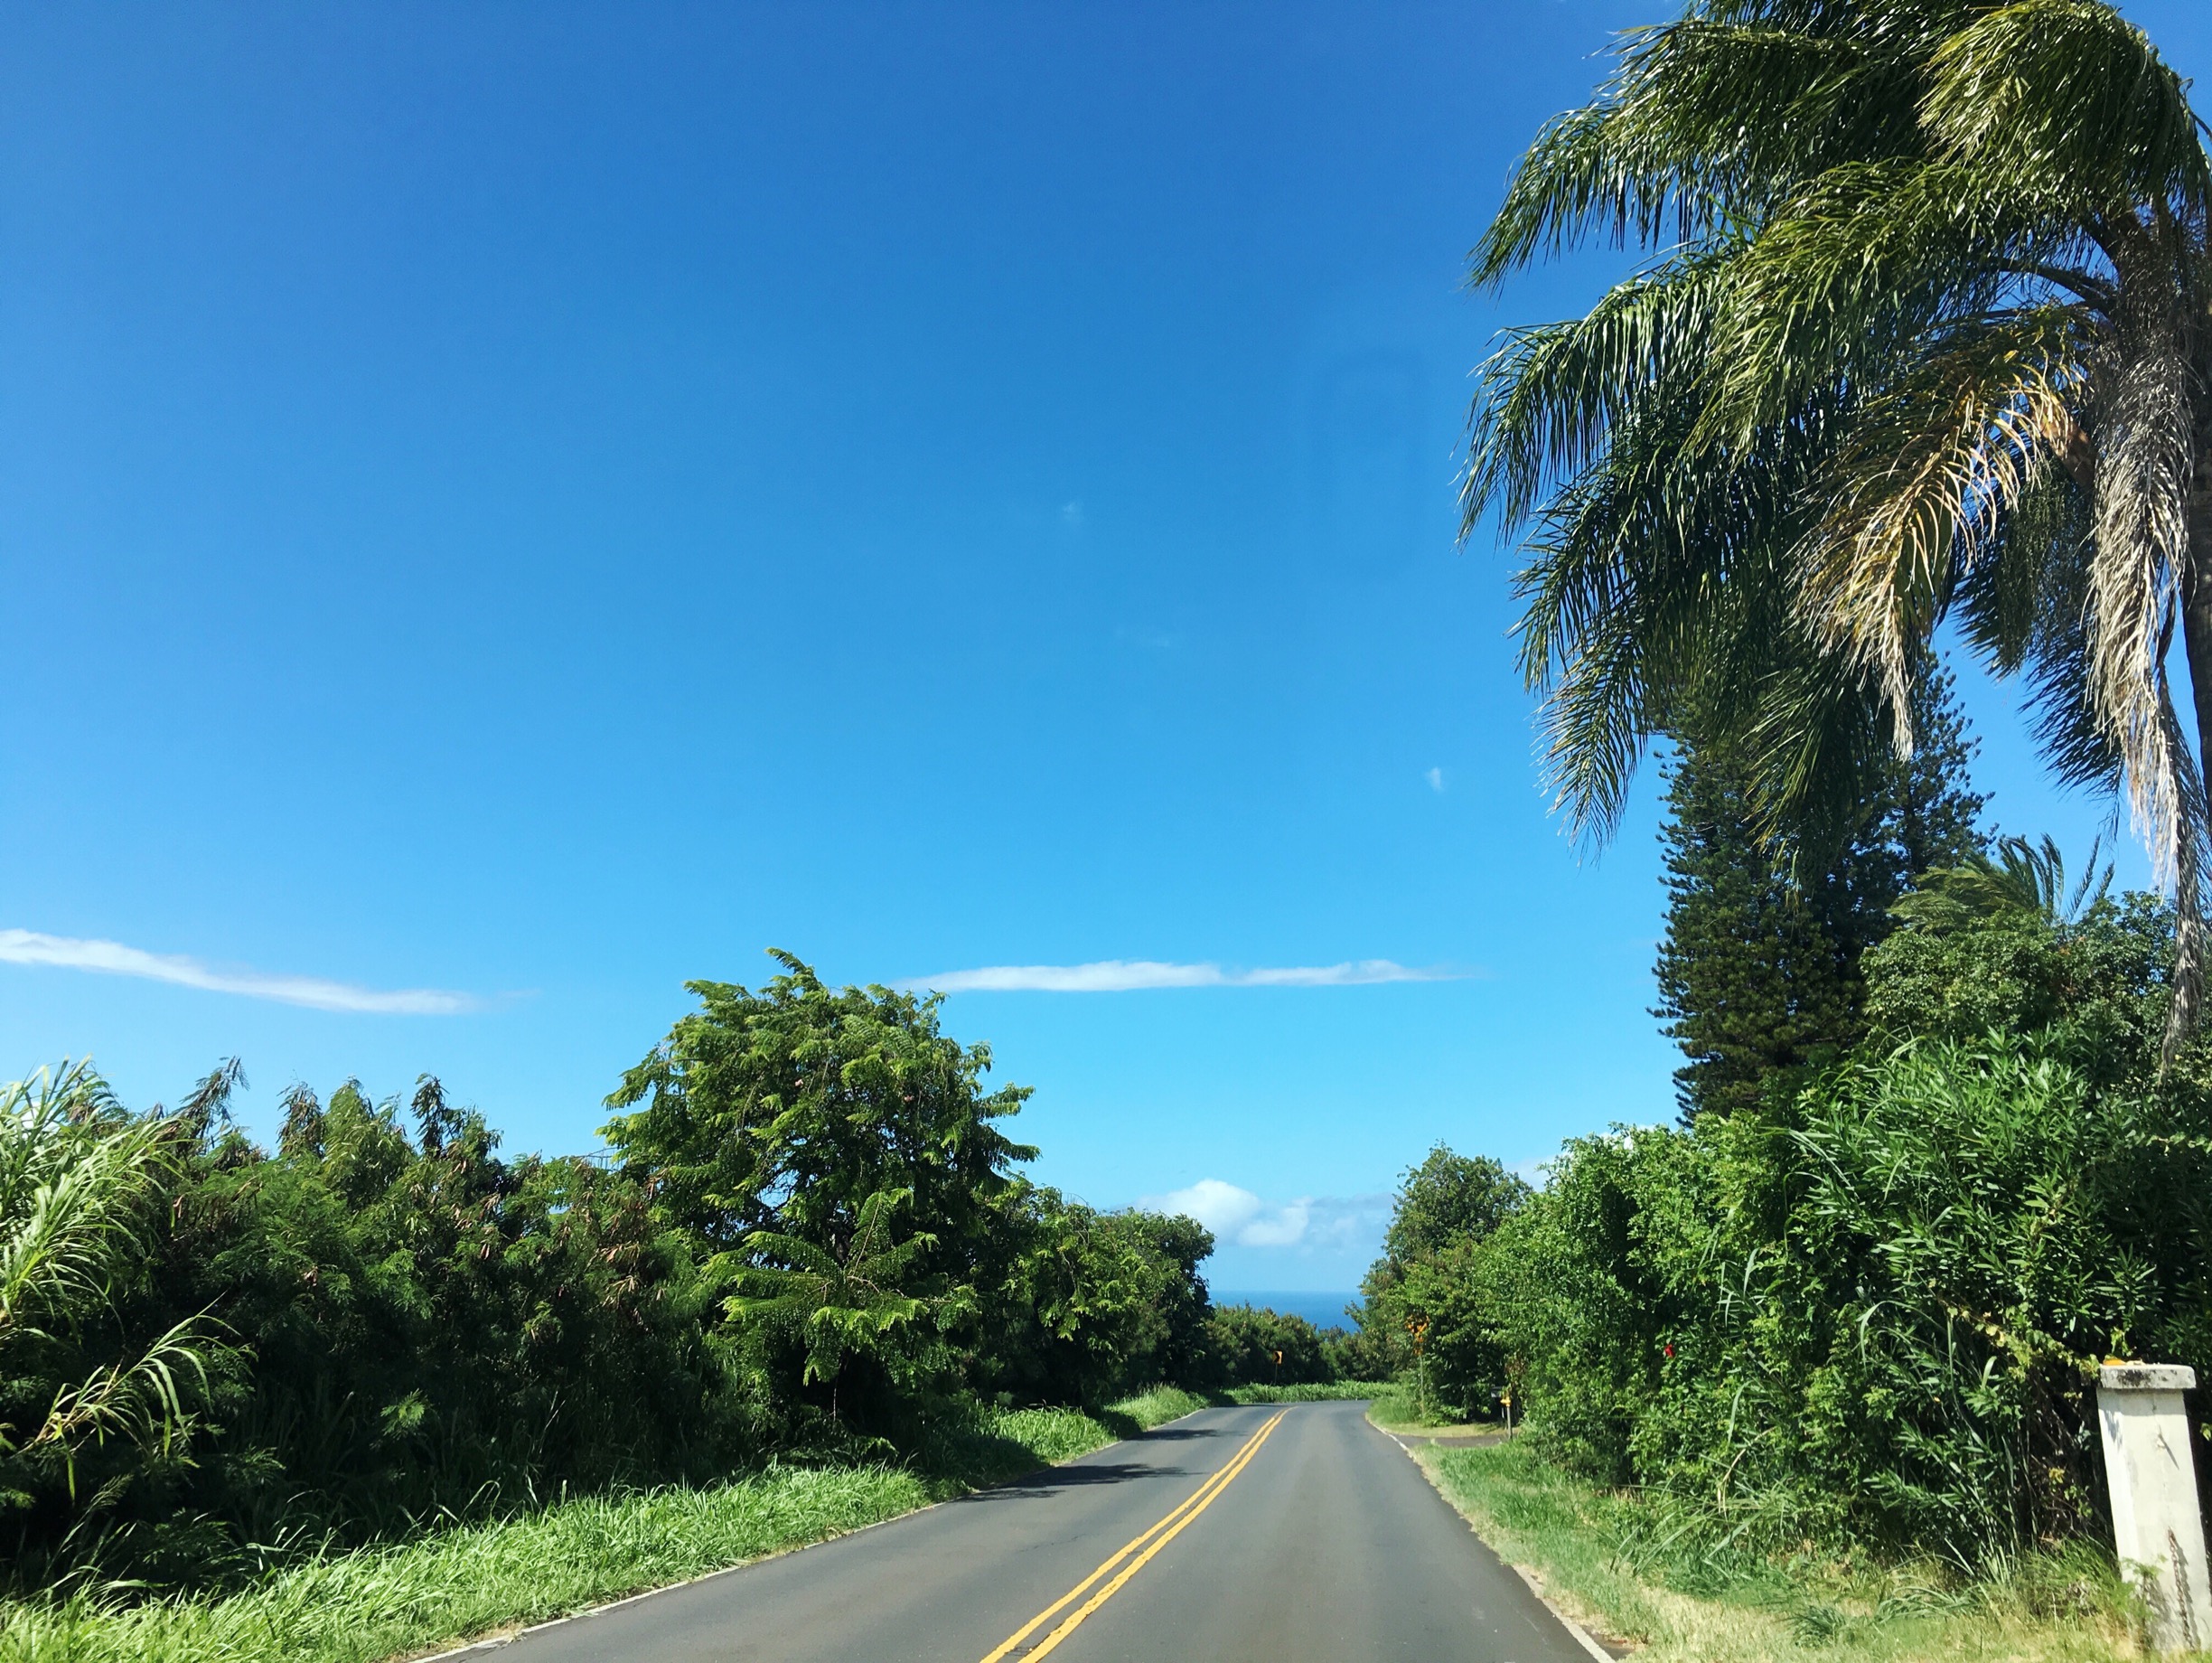 24 Reasons To Visit Maui